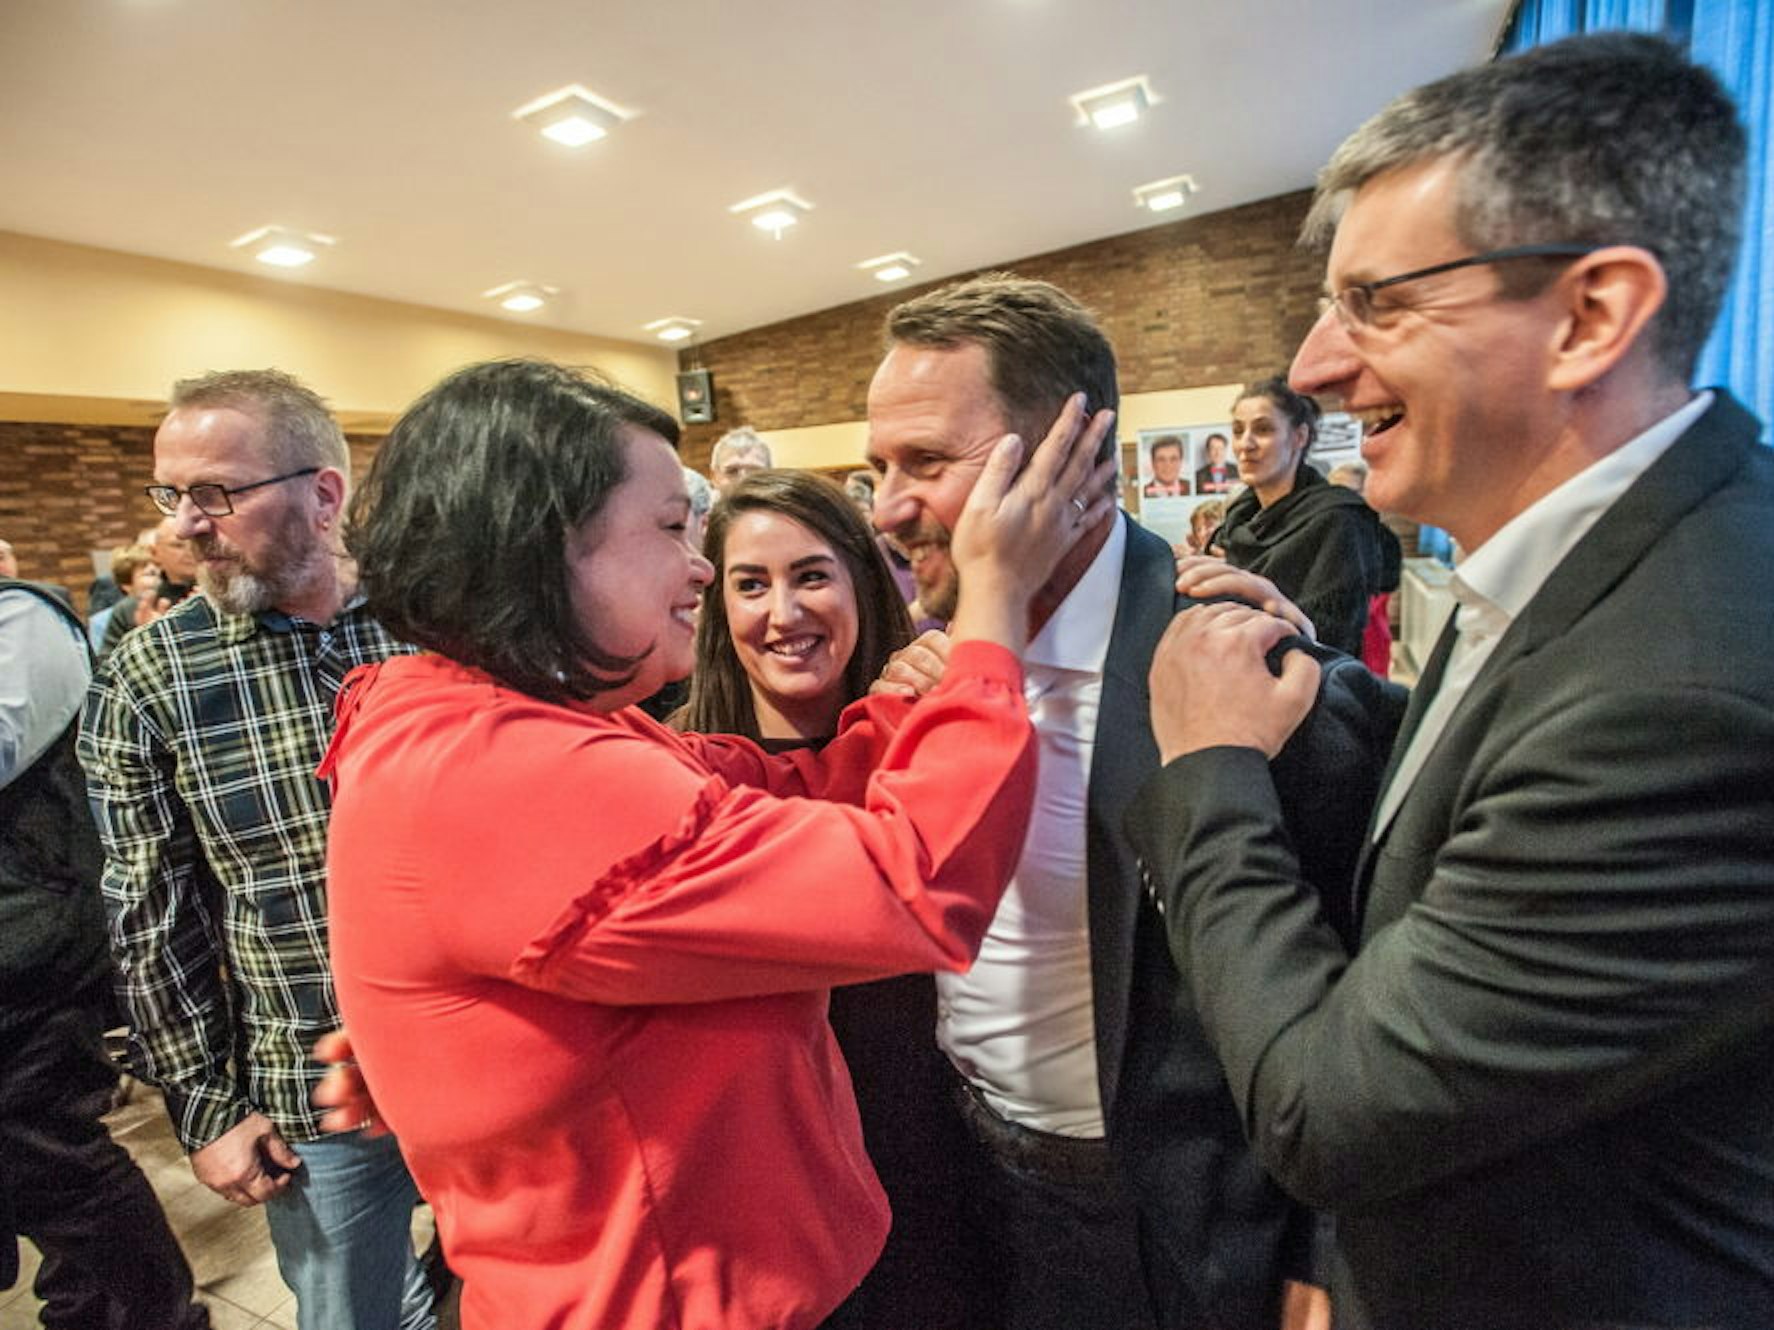 Zu den ersten Gratulanten gehören Leute, die in der Partei unter Druck stehen: Milanie Hengst, die demontierte Parteichefin Aylin Dogan und Dirk Loeb mit dem erneut gekürten OB-Kandidaten.